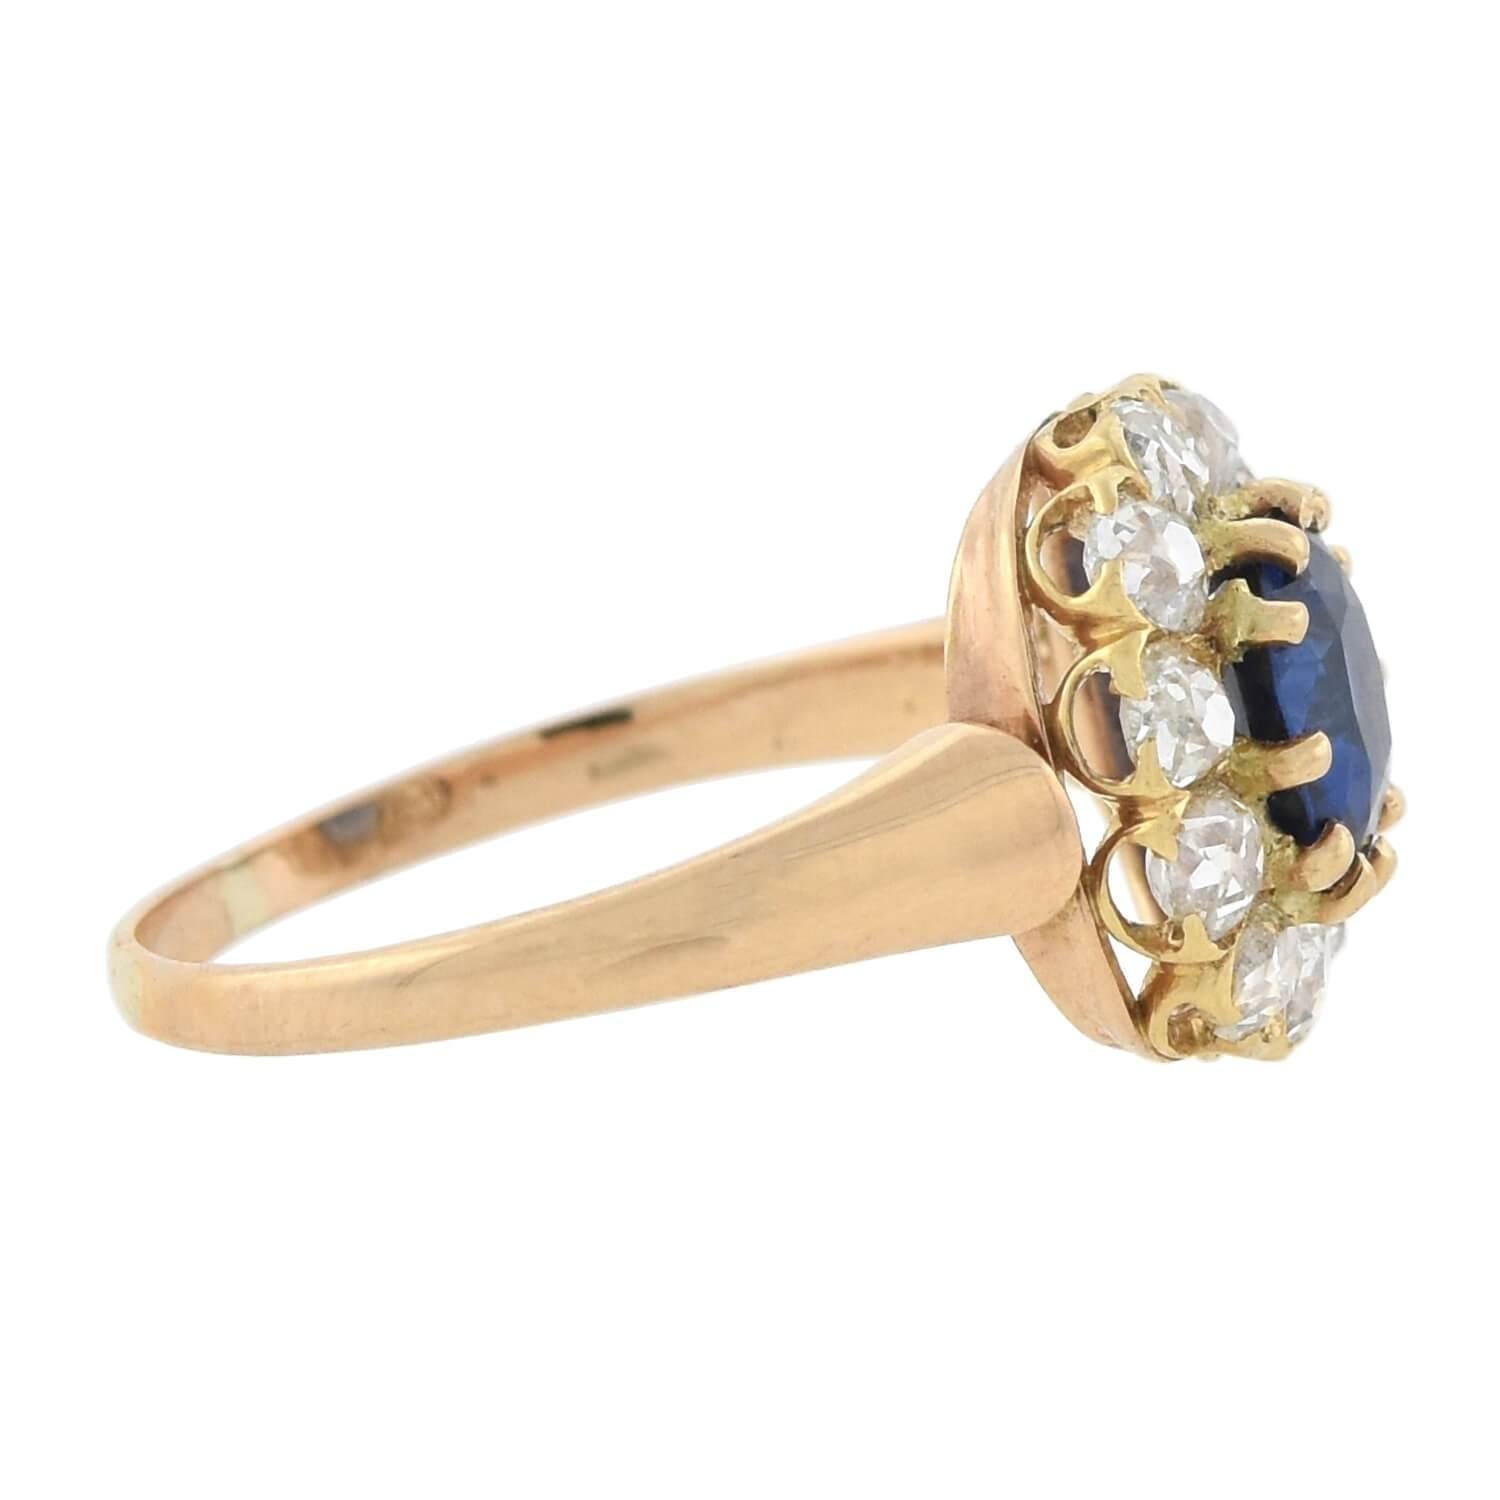 Ein wunderschöner Saphir- und Diamantring aus der späten viktorianischen Ära (um 1880)! Dieser wunderschöne Ring aus 18-karätigem Gold zeigt einen natürlichen Ceylon-Saphir von 1,00 Karat, der in der Mitte von einem funkelnden Diamanten eingerahmt